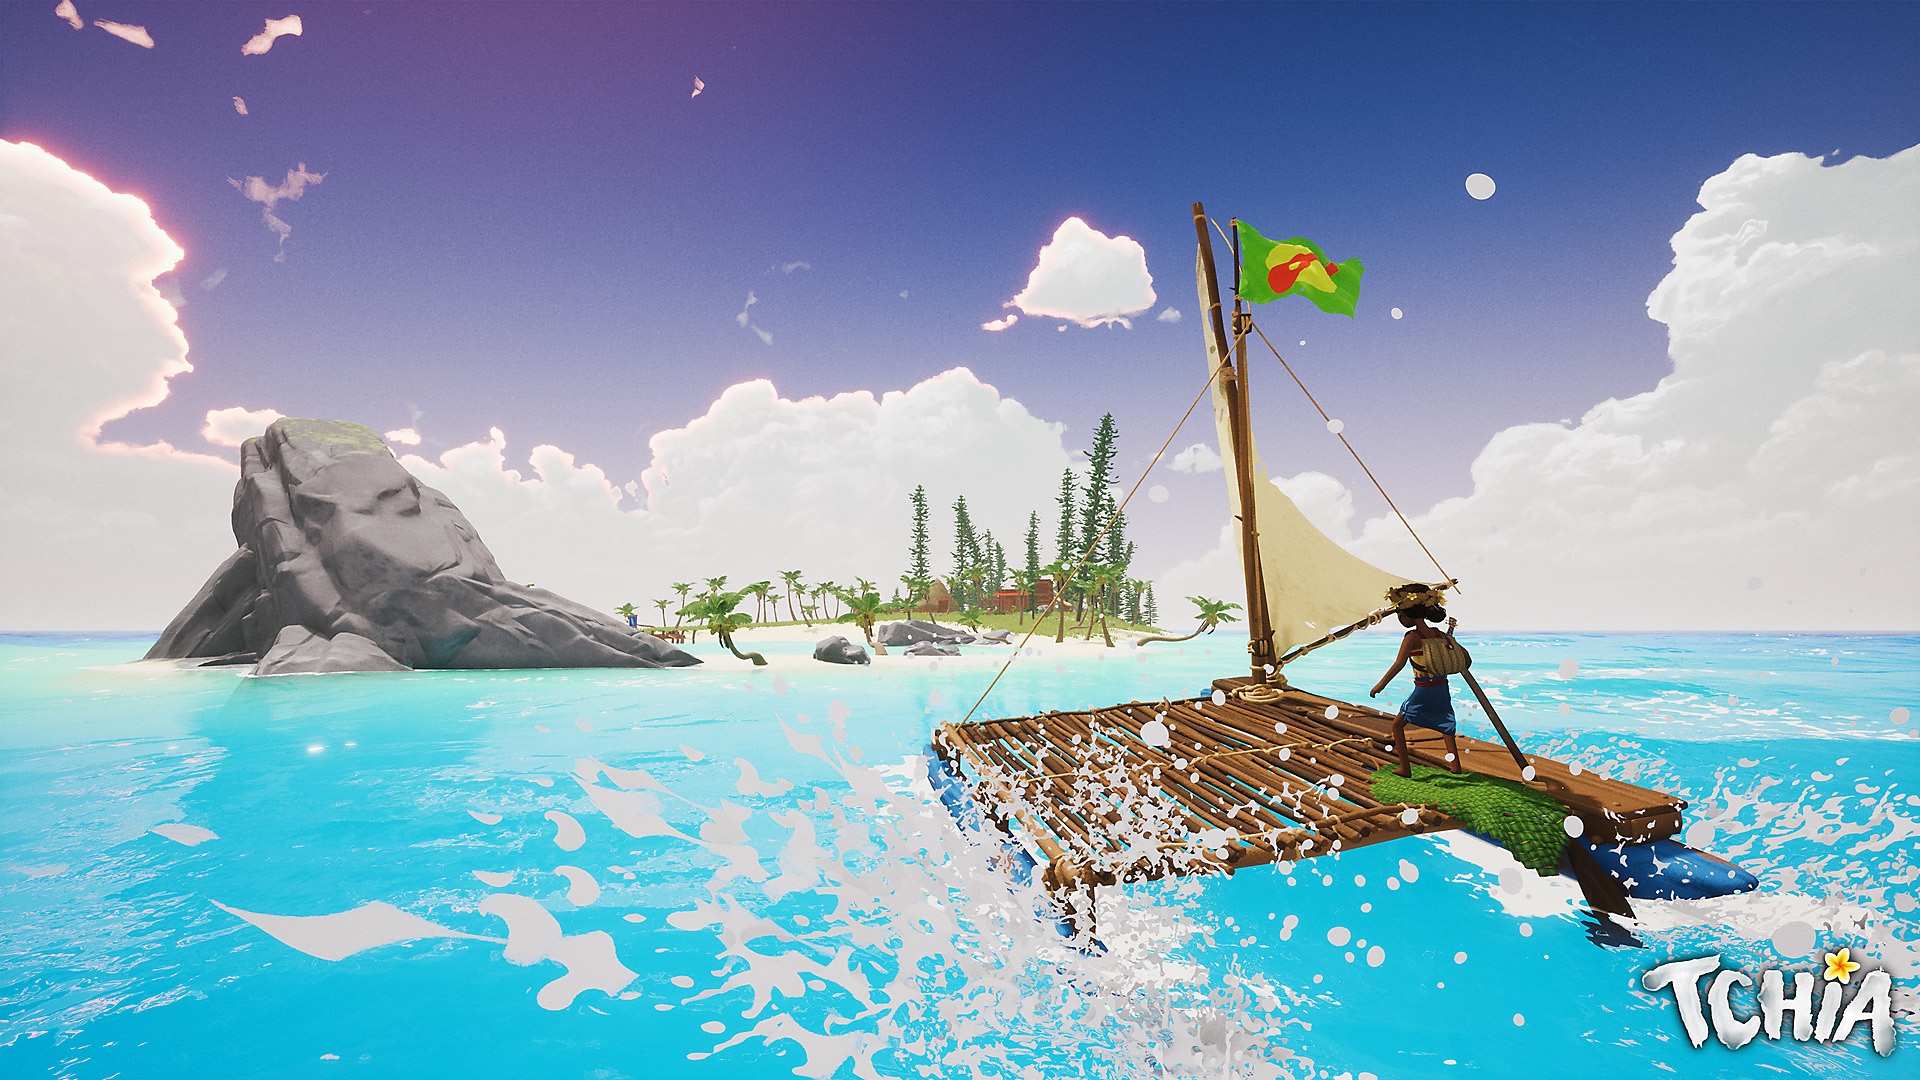 Tchia - Istantanea della schermata che mostra la protagonista che naviga su una zattera verso un'isola